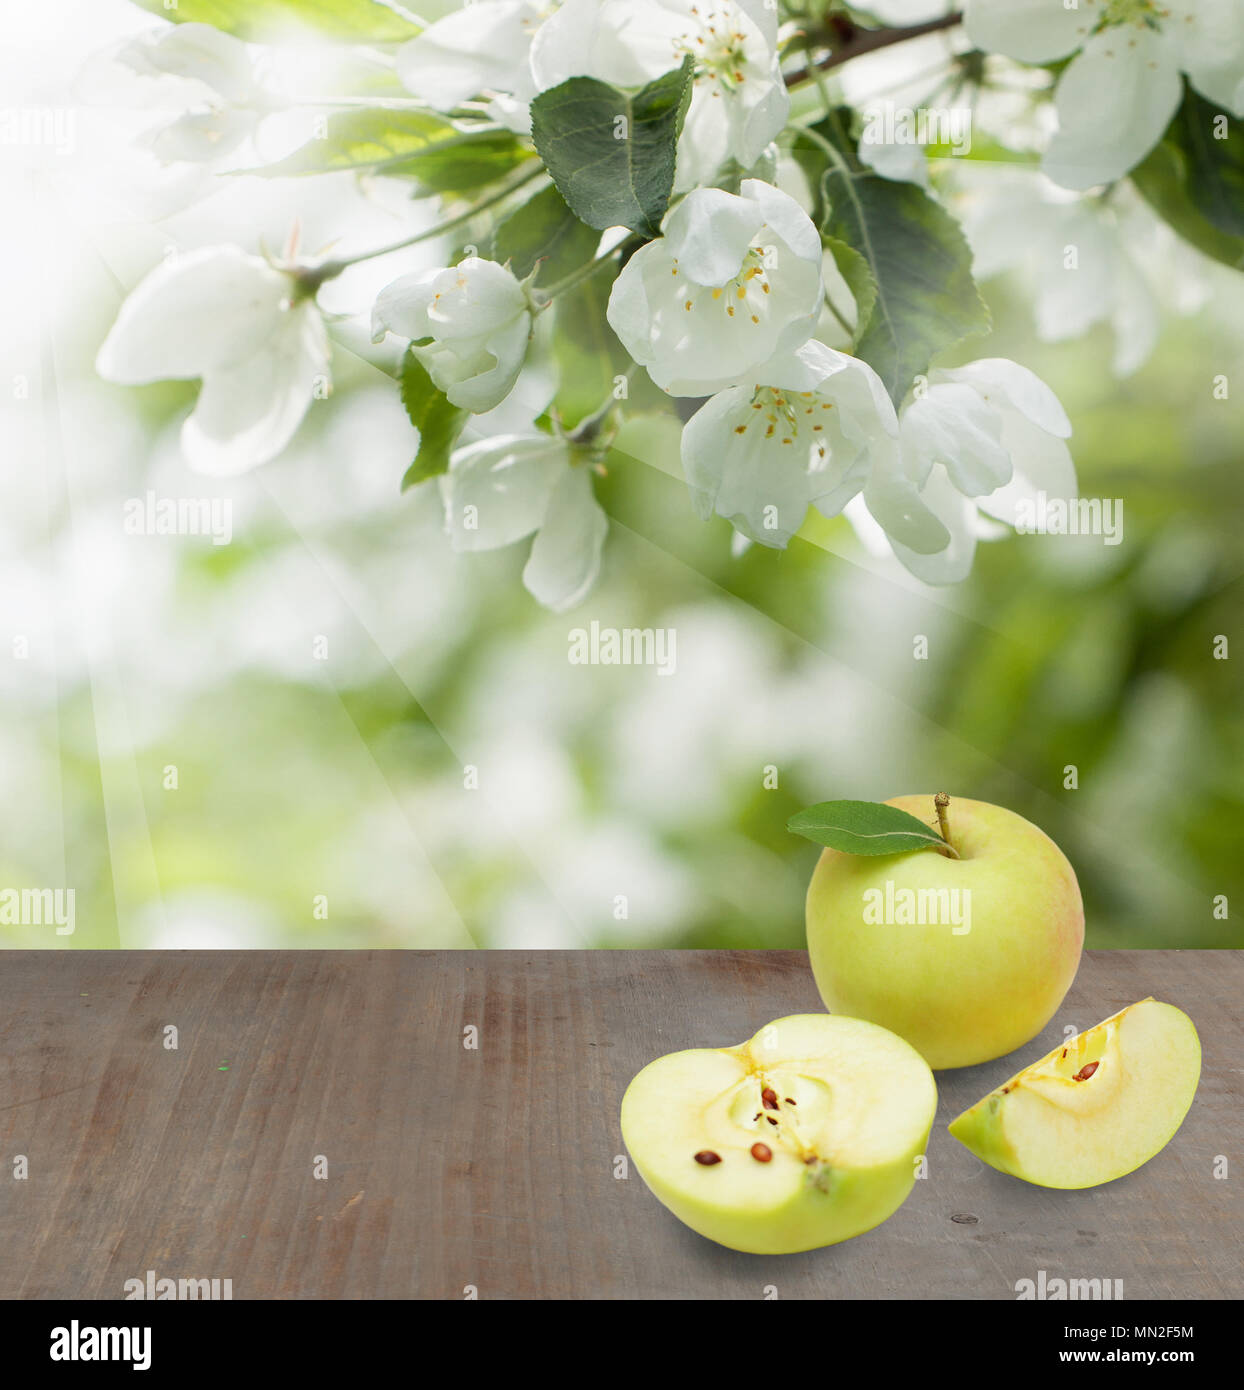 Messa a fuoco morbida dello sfondo con frutti di Apple, il verde delle foglie e fiori di primavera e grigio di legno vuota Foto Stock